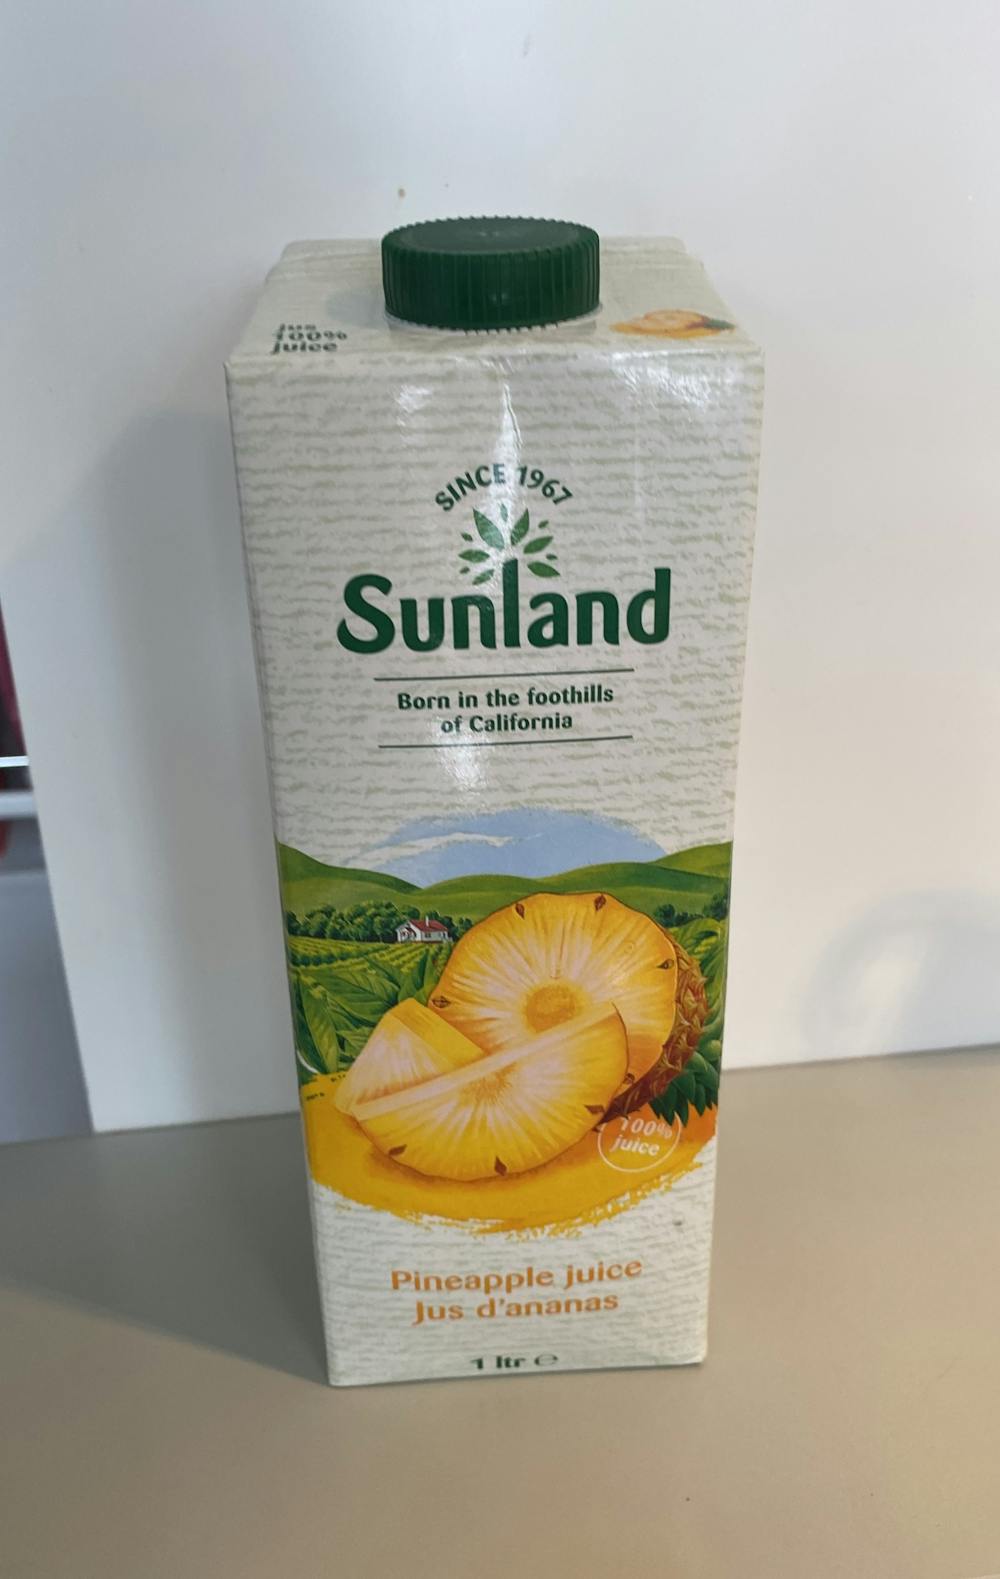 Pineapple juice, Sunland